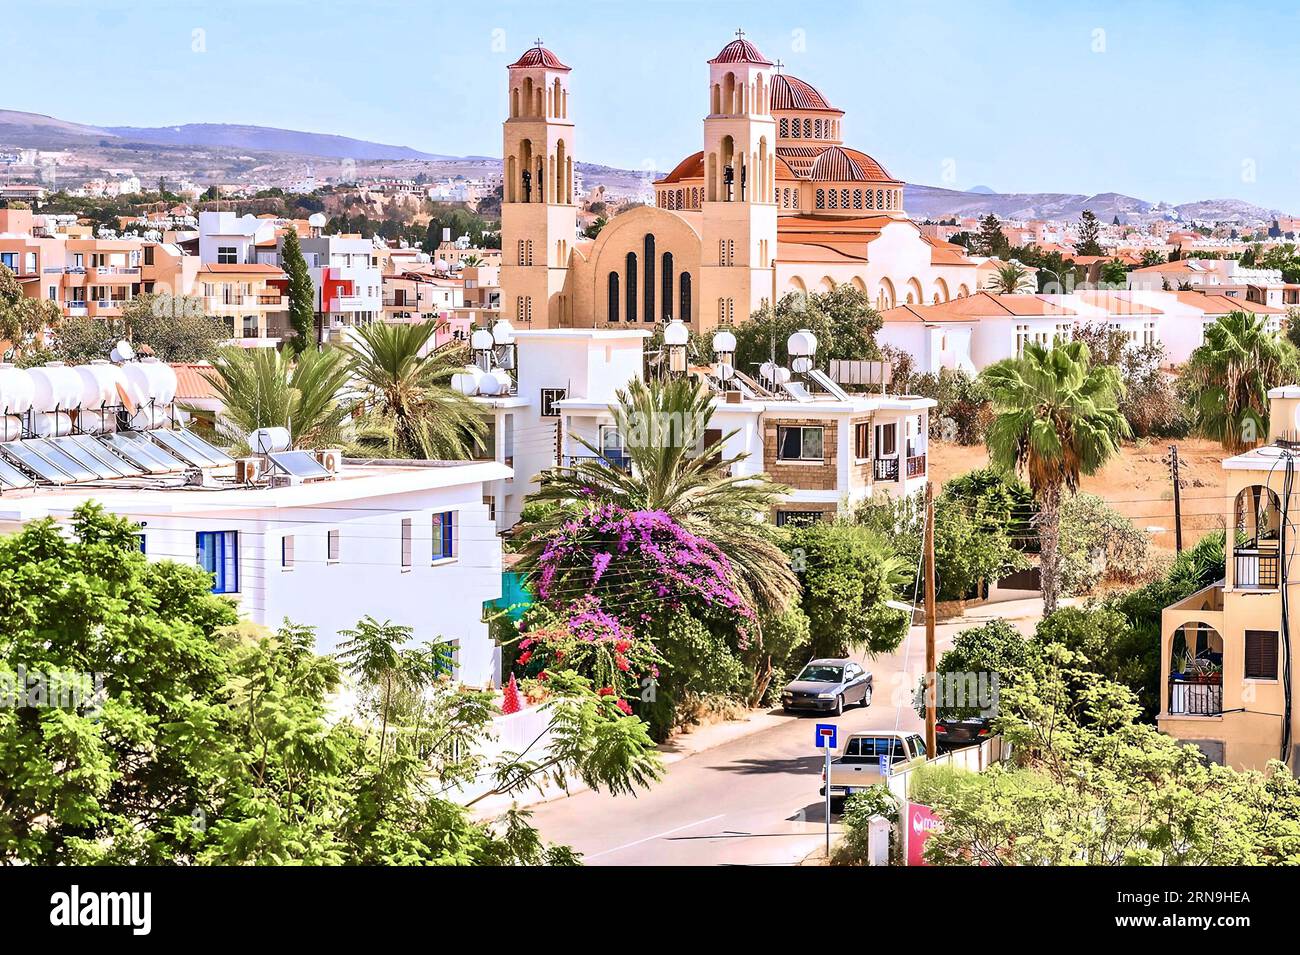 Vista della città di Paphos a Cipro. Paphos è conosciuto come il centro della storia antica e della cultura dell'isola. Foto Stock